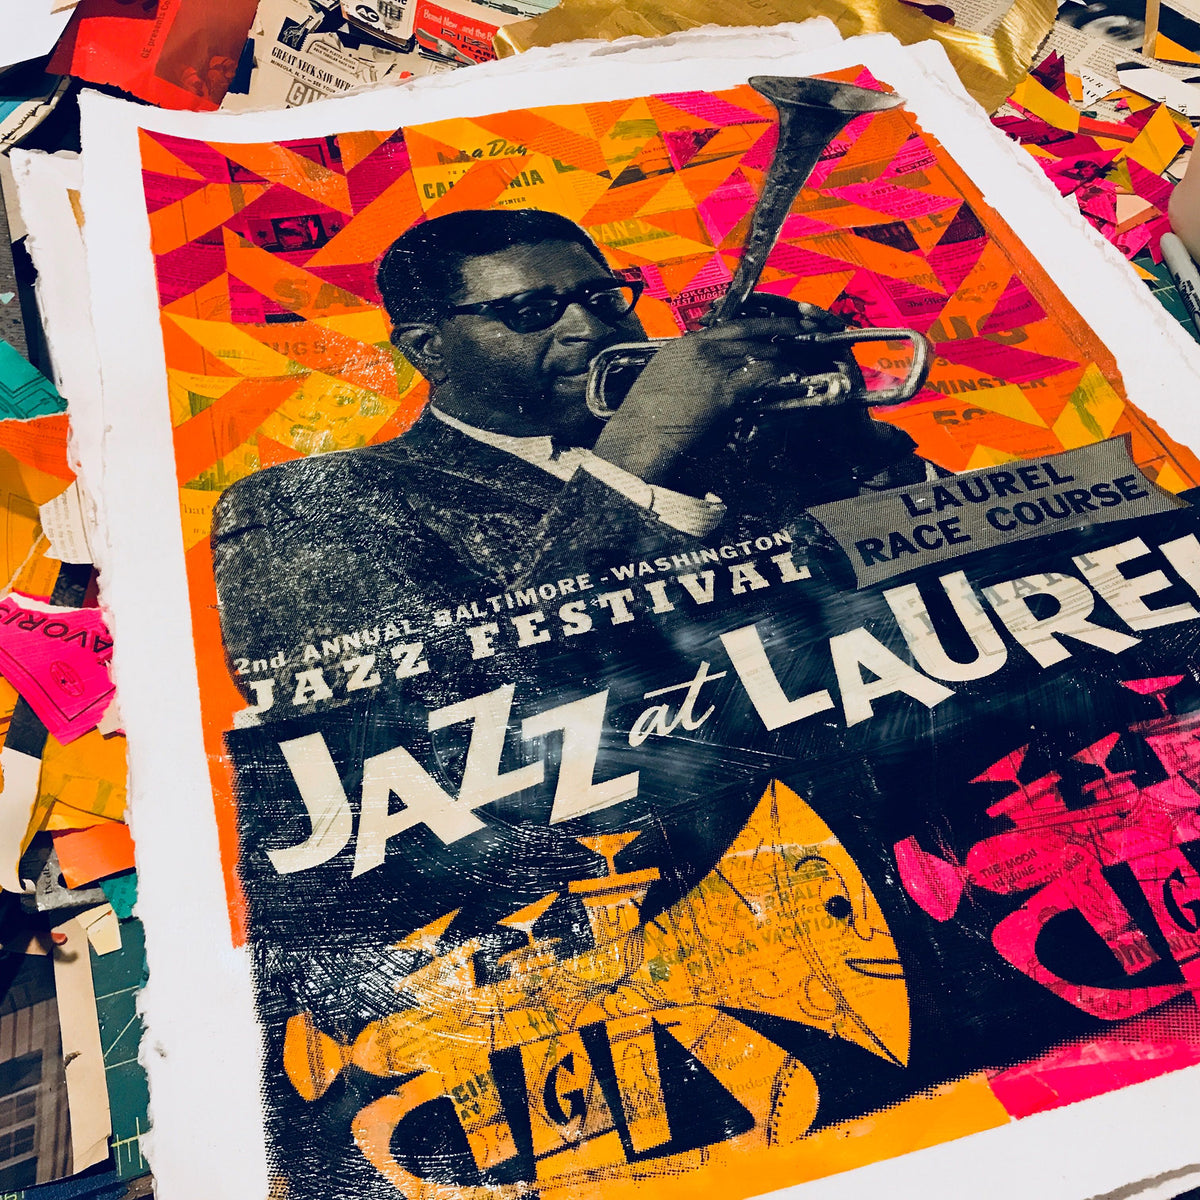 Robert Mars &quot;Jazz at Laurel&quot; - Original Mixed Media Work on Paper - 18 x 24&quot;